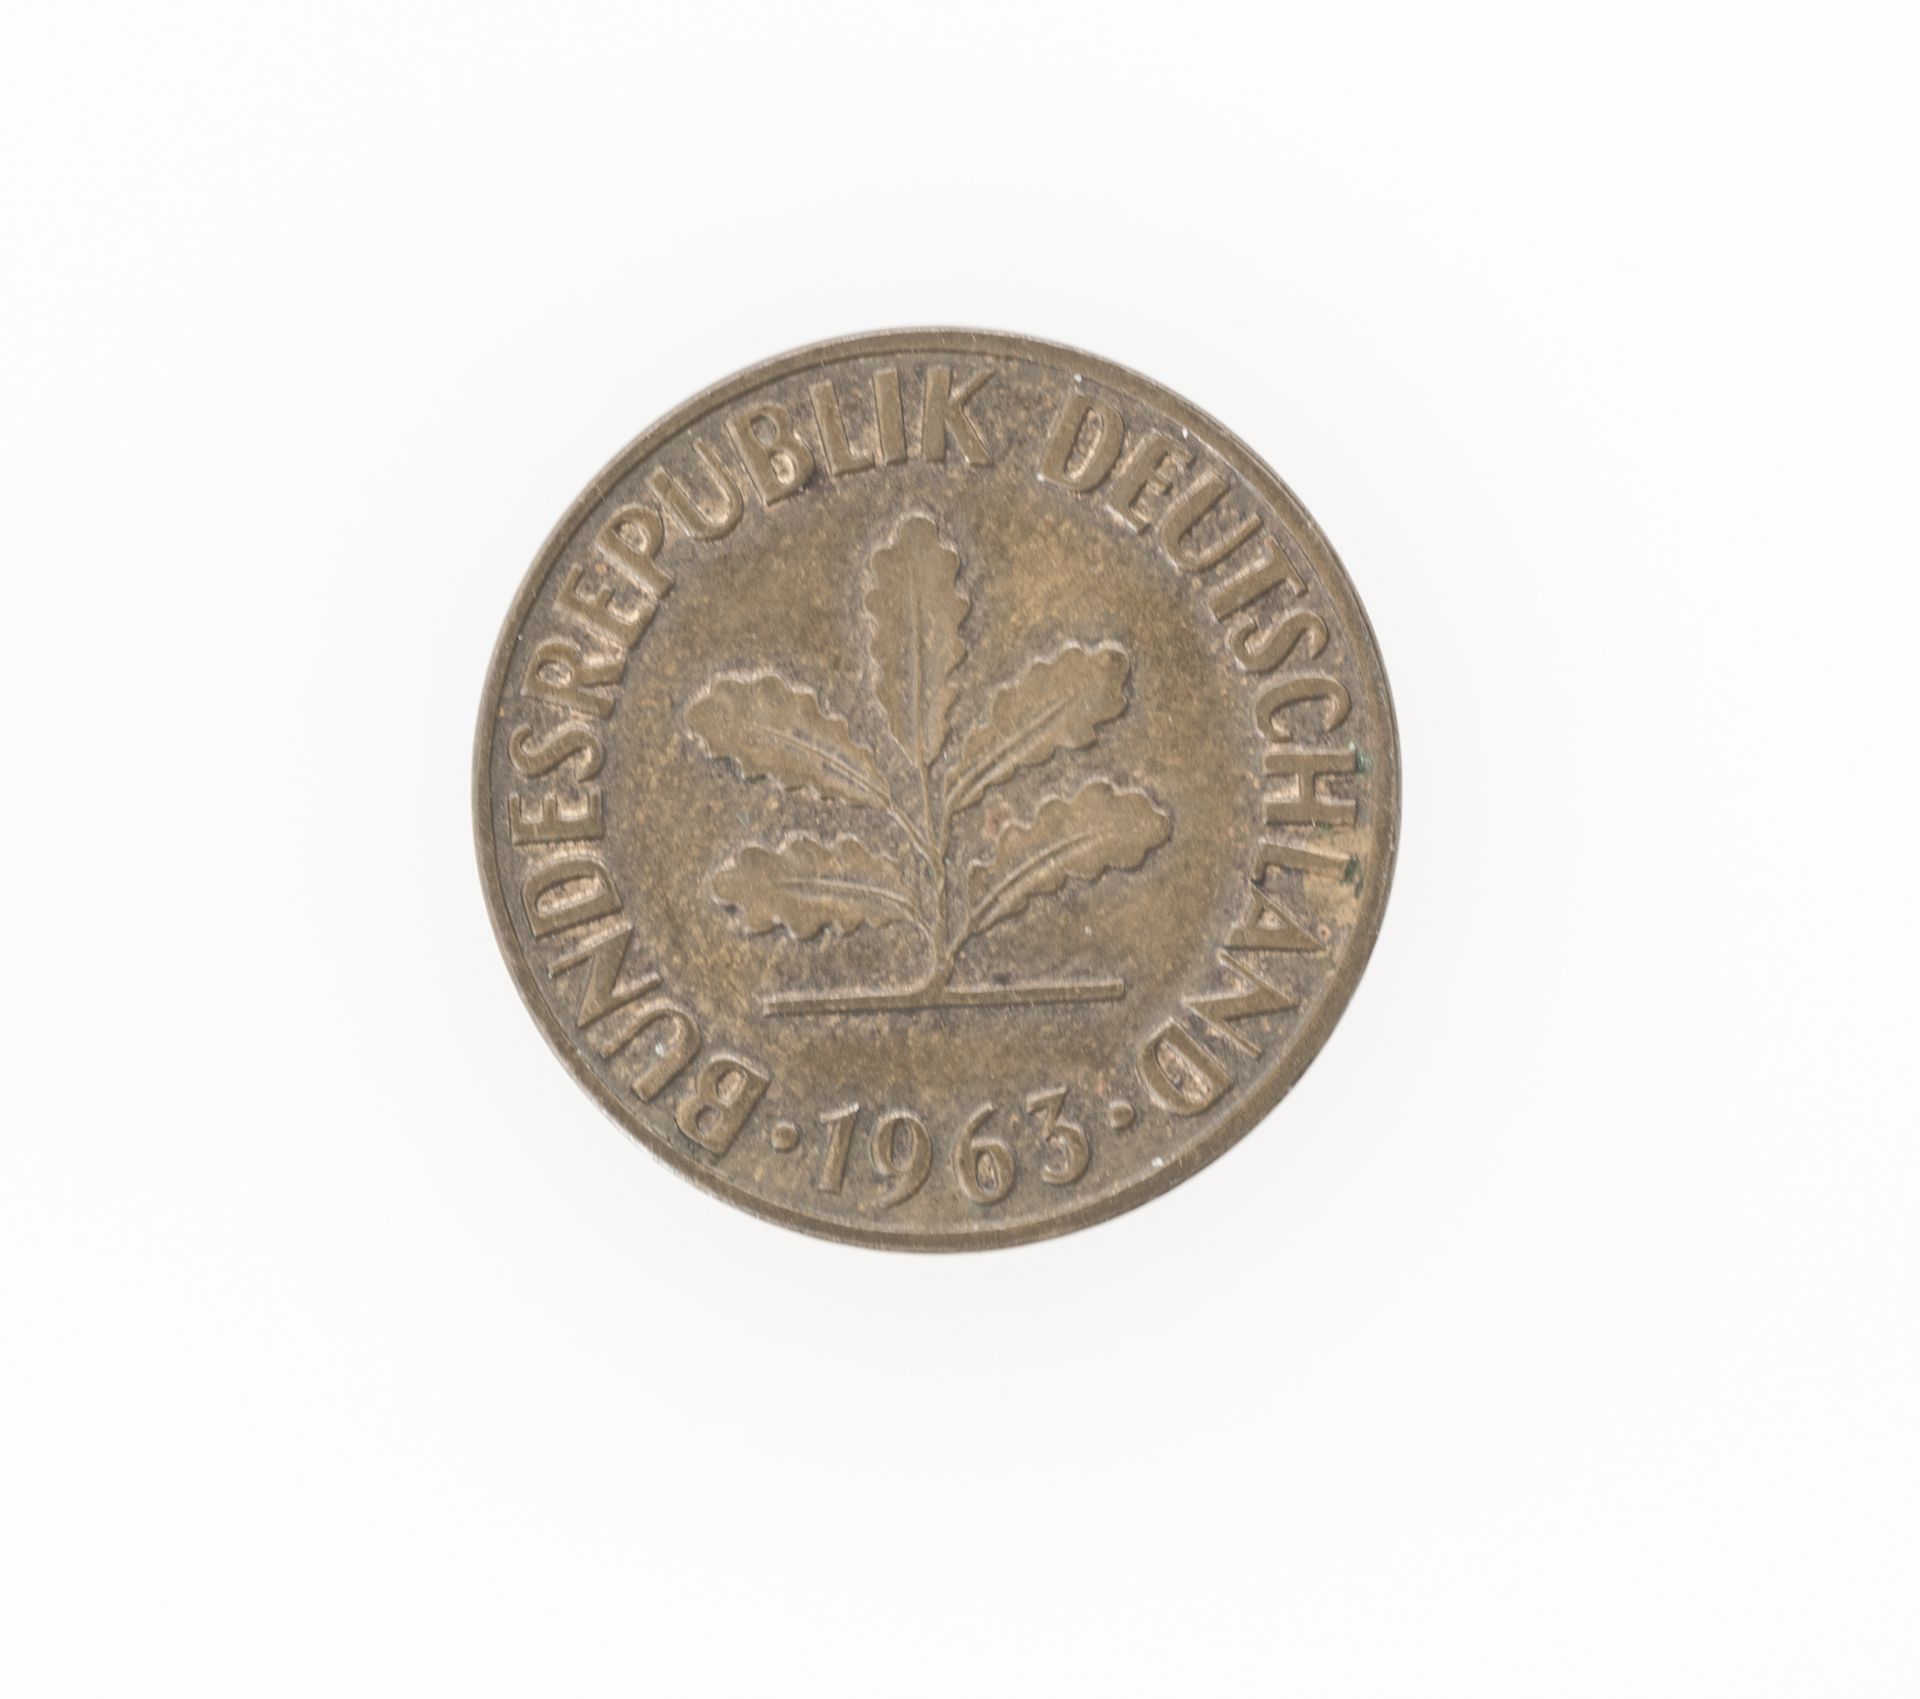 Deutschland 1963, 2 Pfennig - Münze Fehlprägung auf Nominalseite. Nicht magnetisch. - Bild 2 aus 2